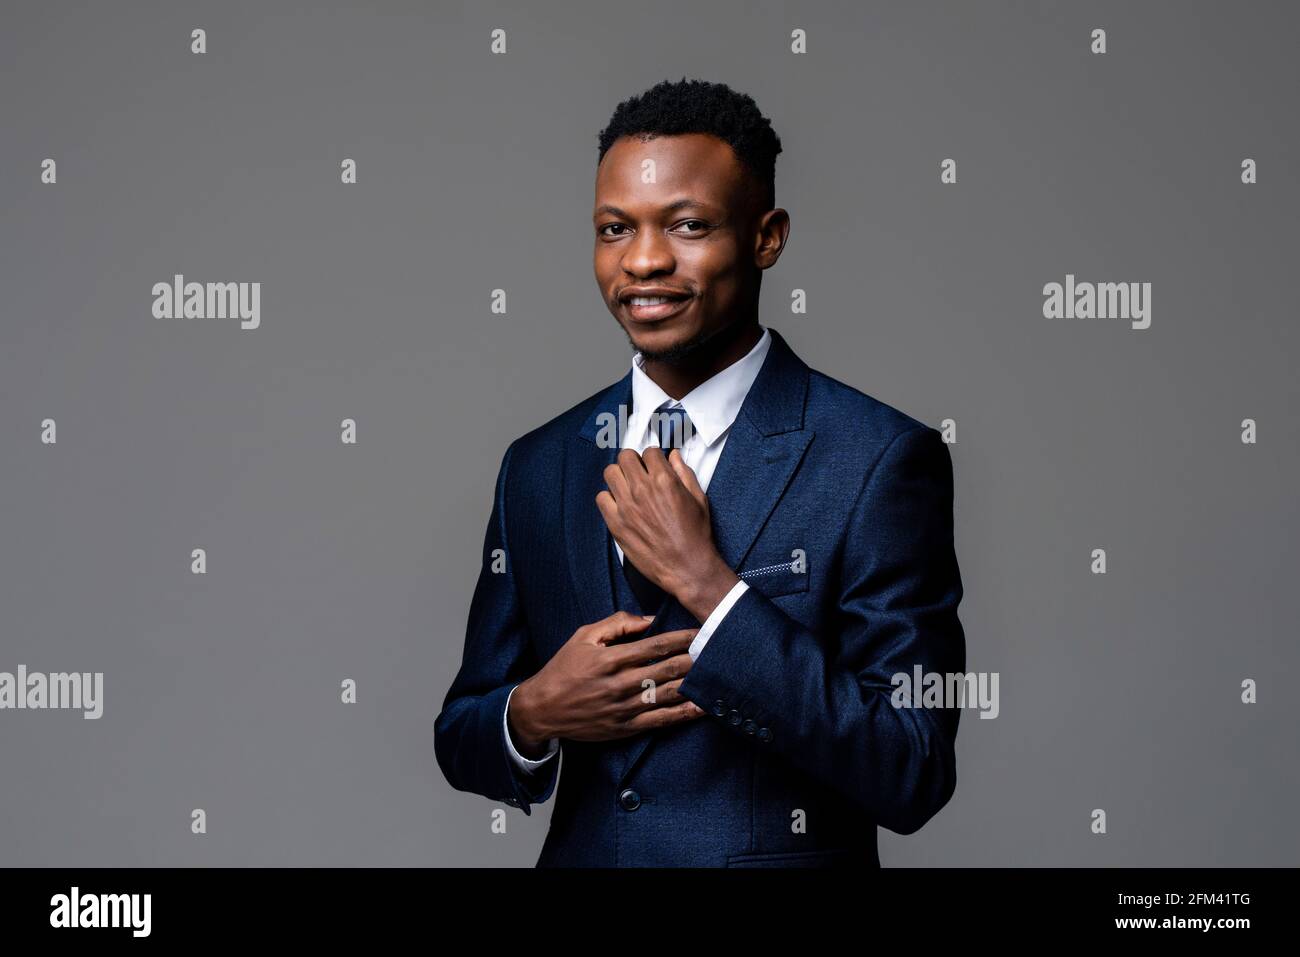 Porträt eines jungen hübschen afrikanischen Mannes in formellem Business-Anzug Mit Krawatte und Blick auf die Kamera isoliert auf Studio grau Hintergrund Stockfoto